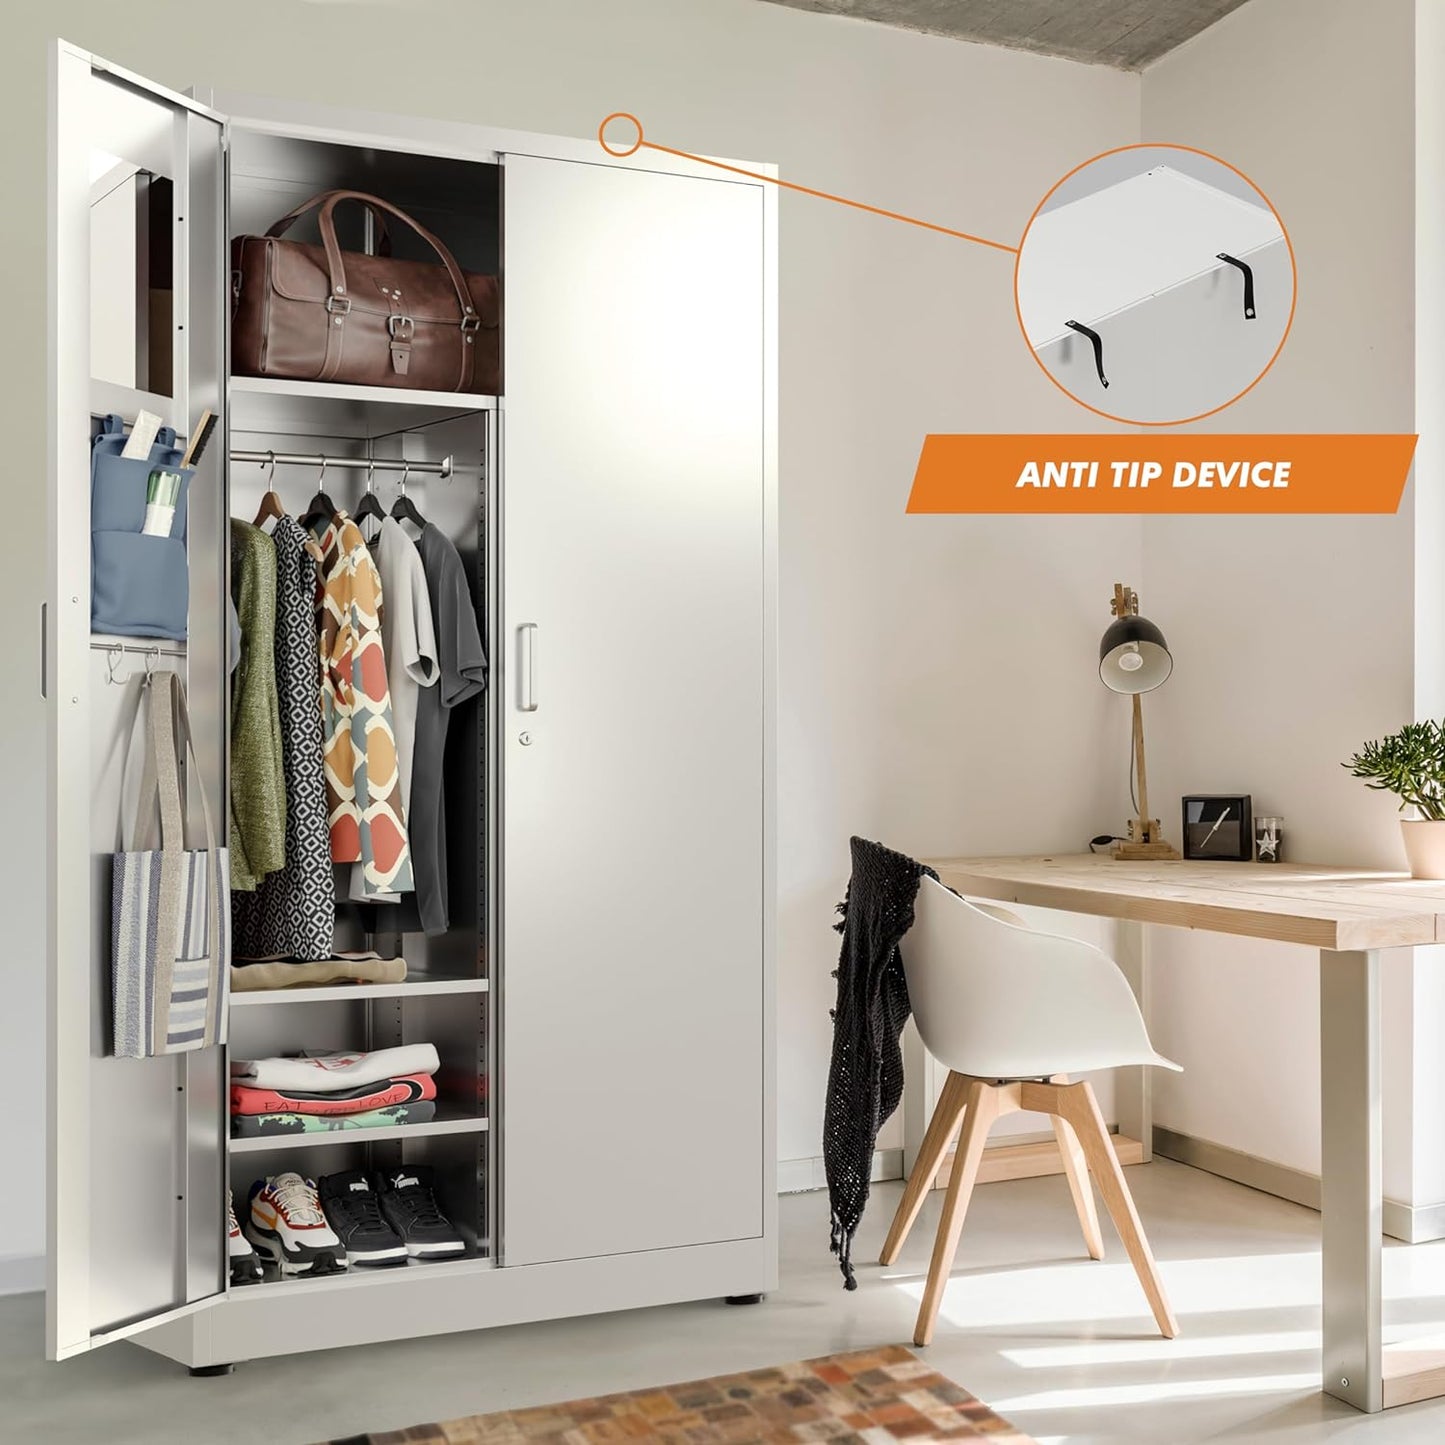 Wardrobe Metal Storage Cabinet - Metal Storage Locker with Locking Doors (White)